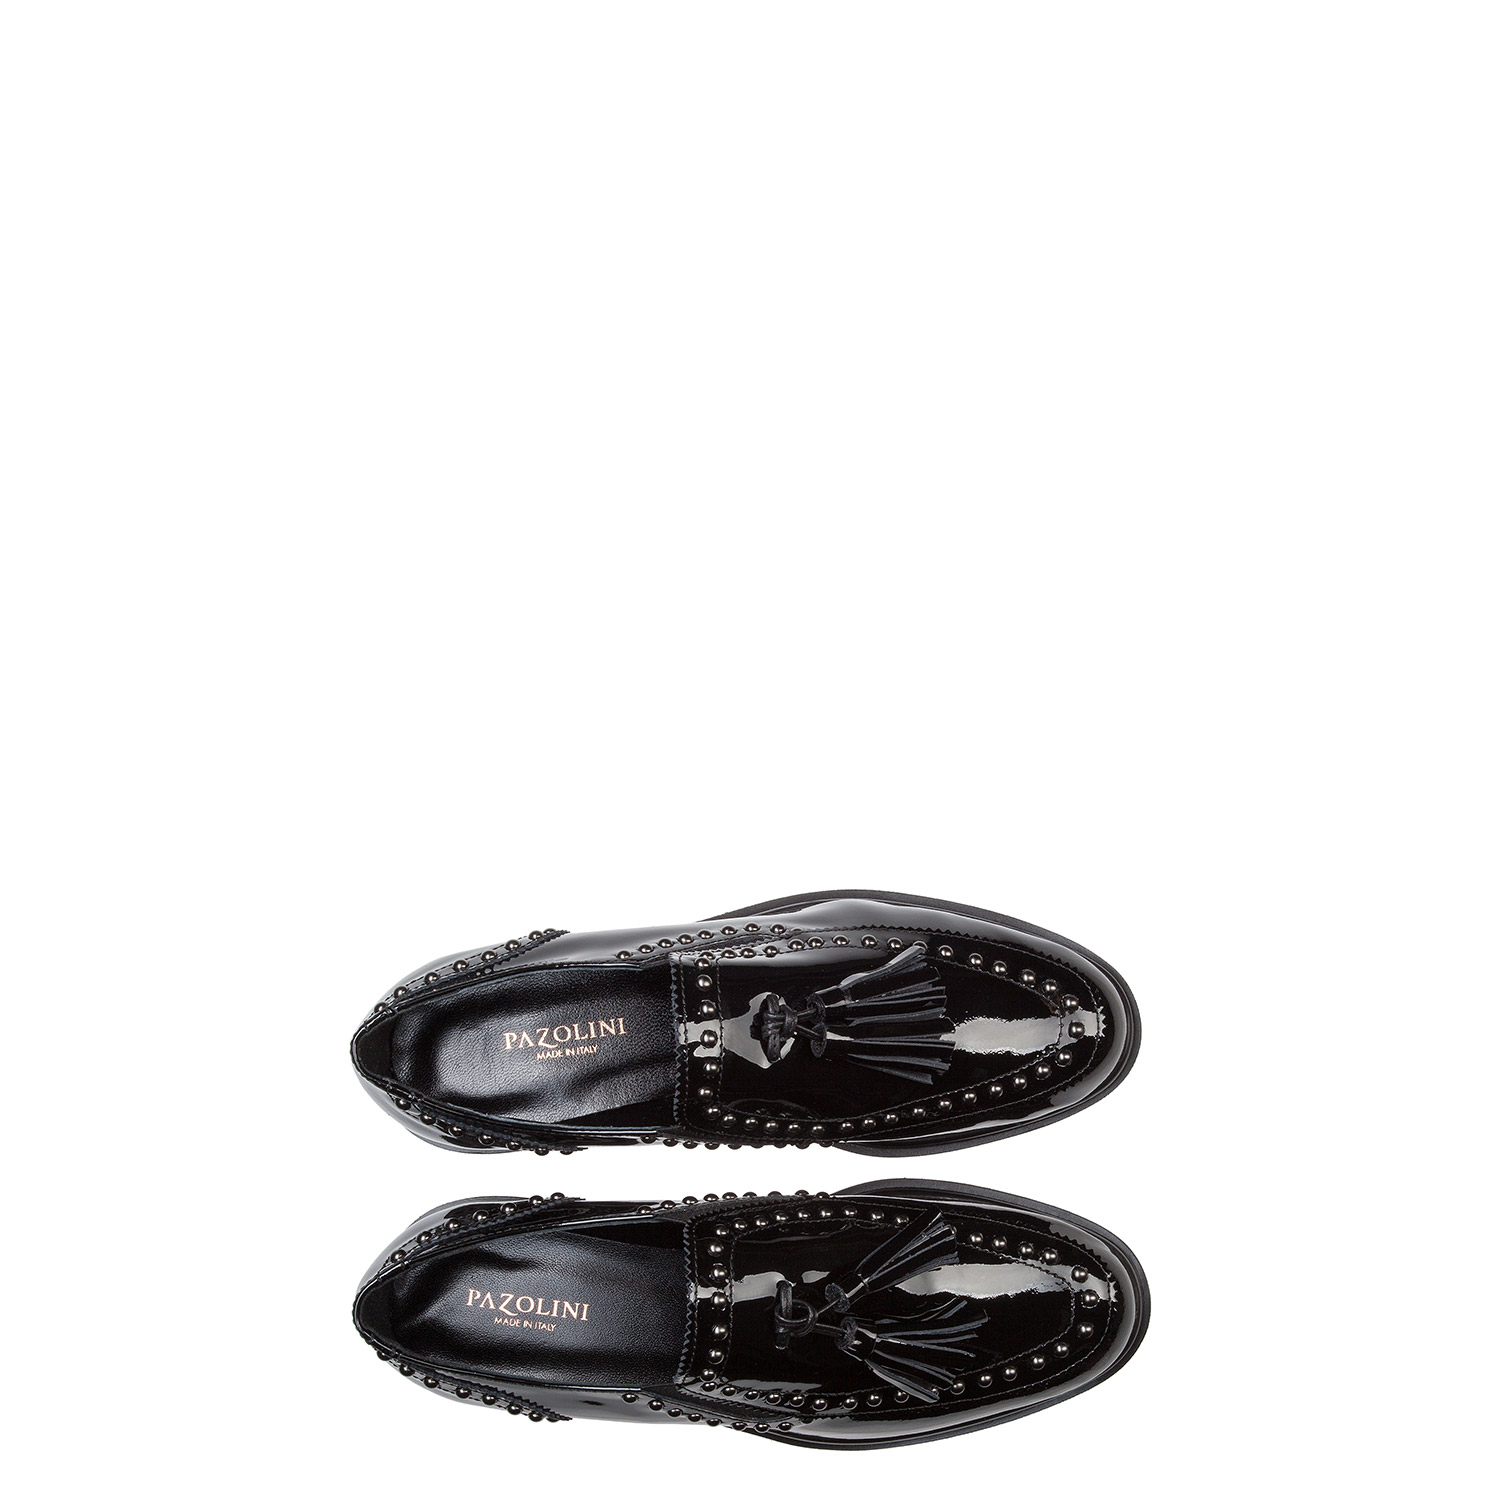 Women's shoe booties PAZOLINI RE-X1824-1